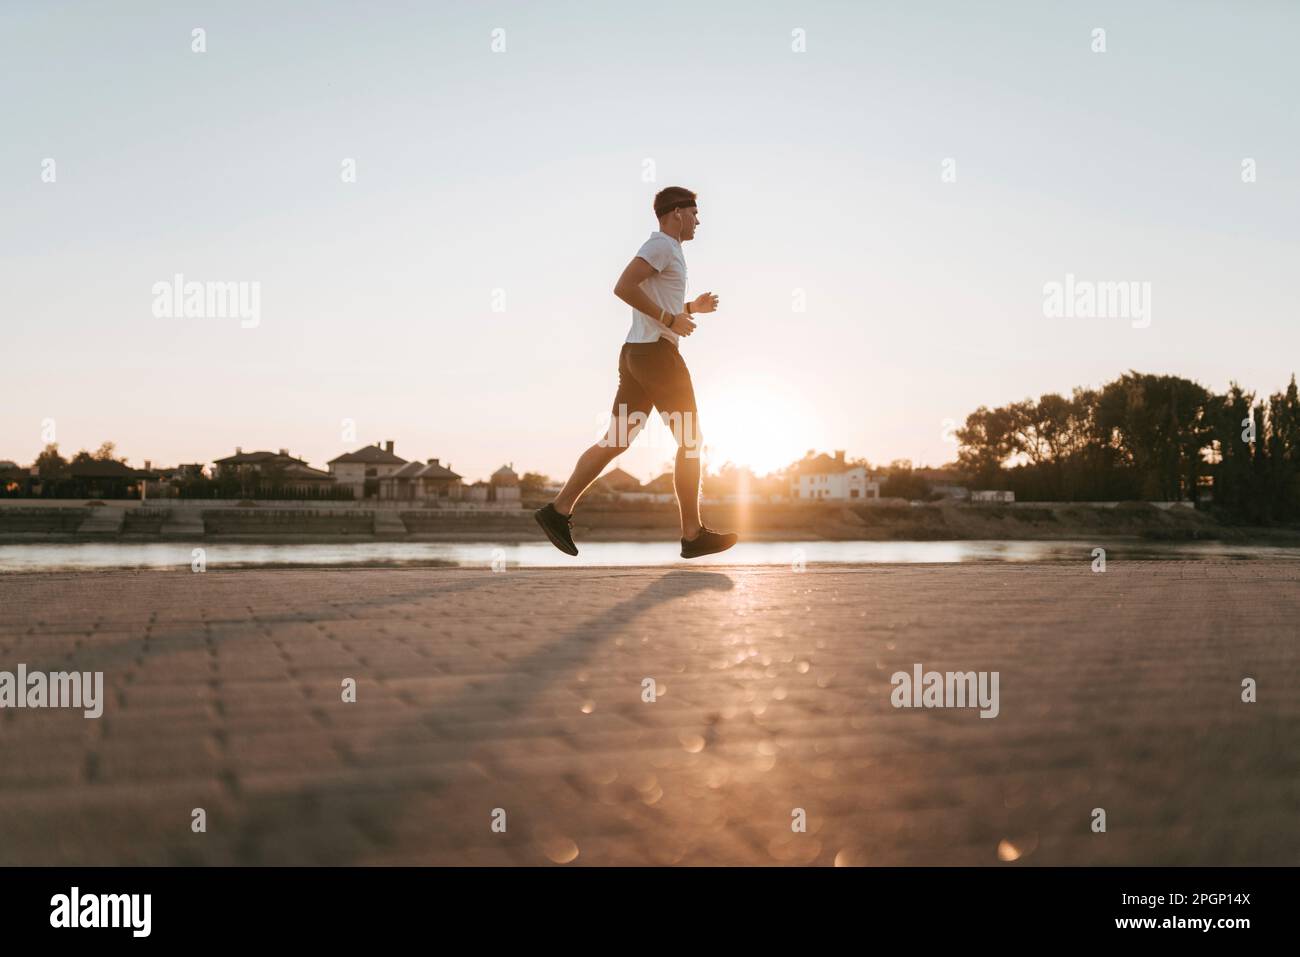 Jeune homme qui court sur une piste de jogging au coucher du soleil Banque D'Images